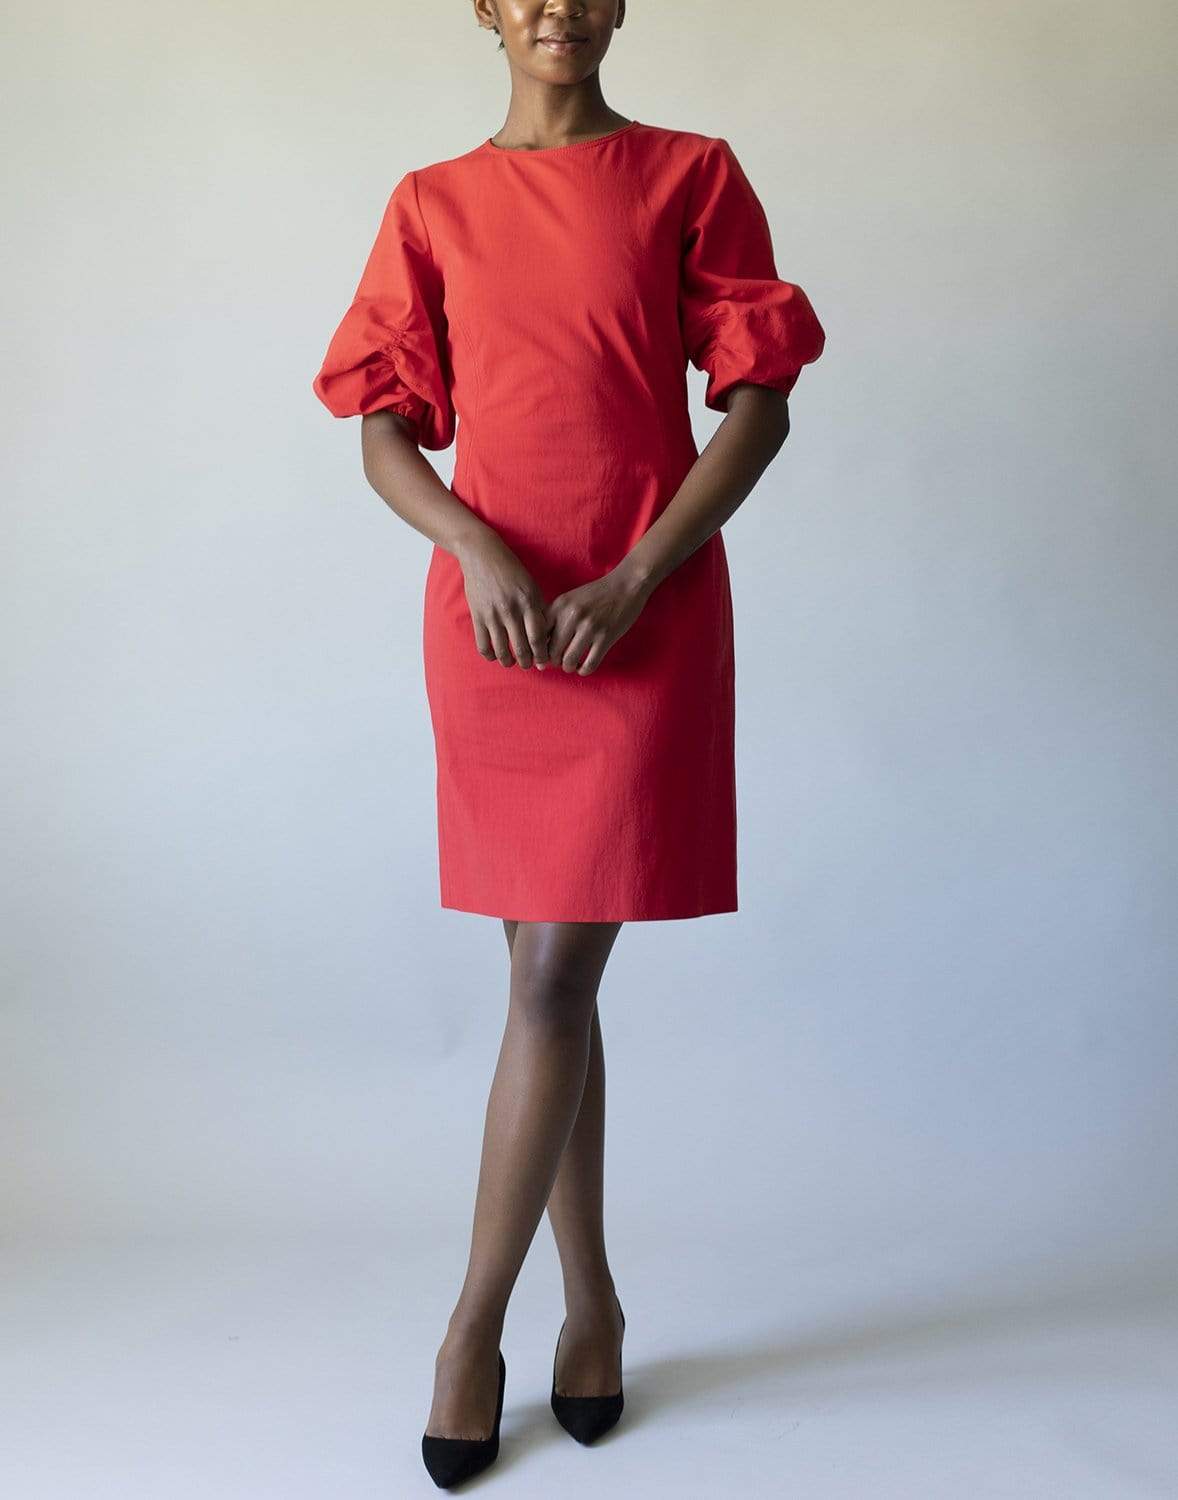 OSCAR DE LA RENTA-Scarlet Elbow Sleeve Slim Cotton Dress-RED